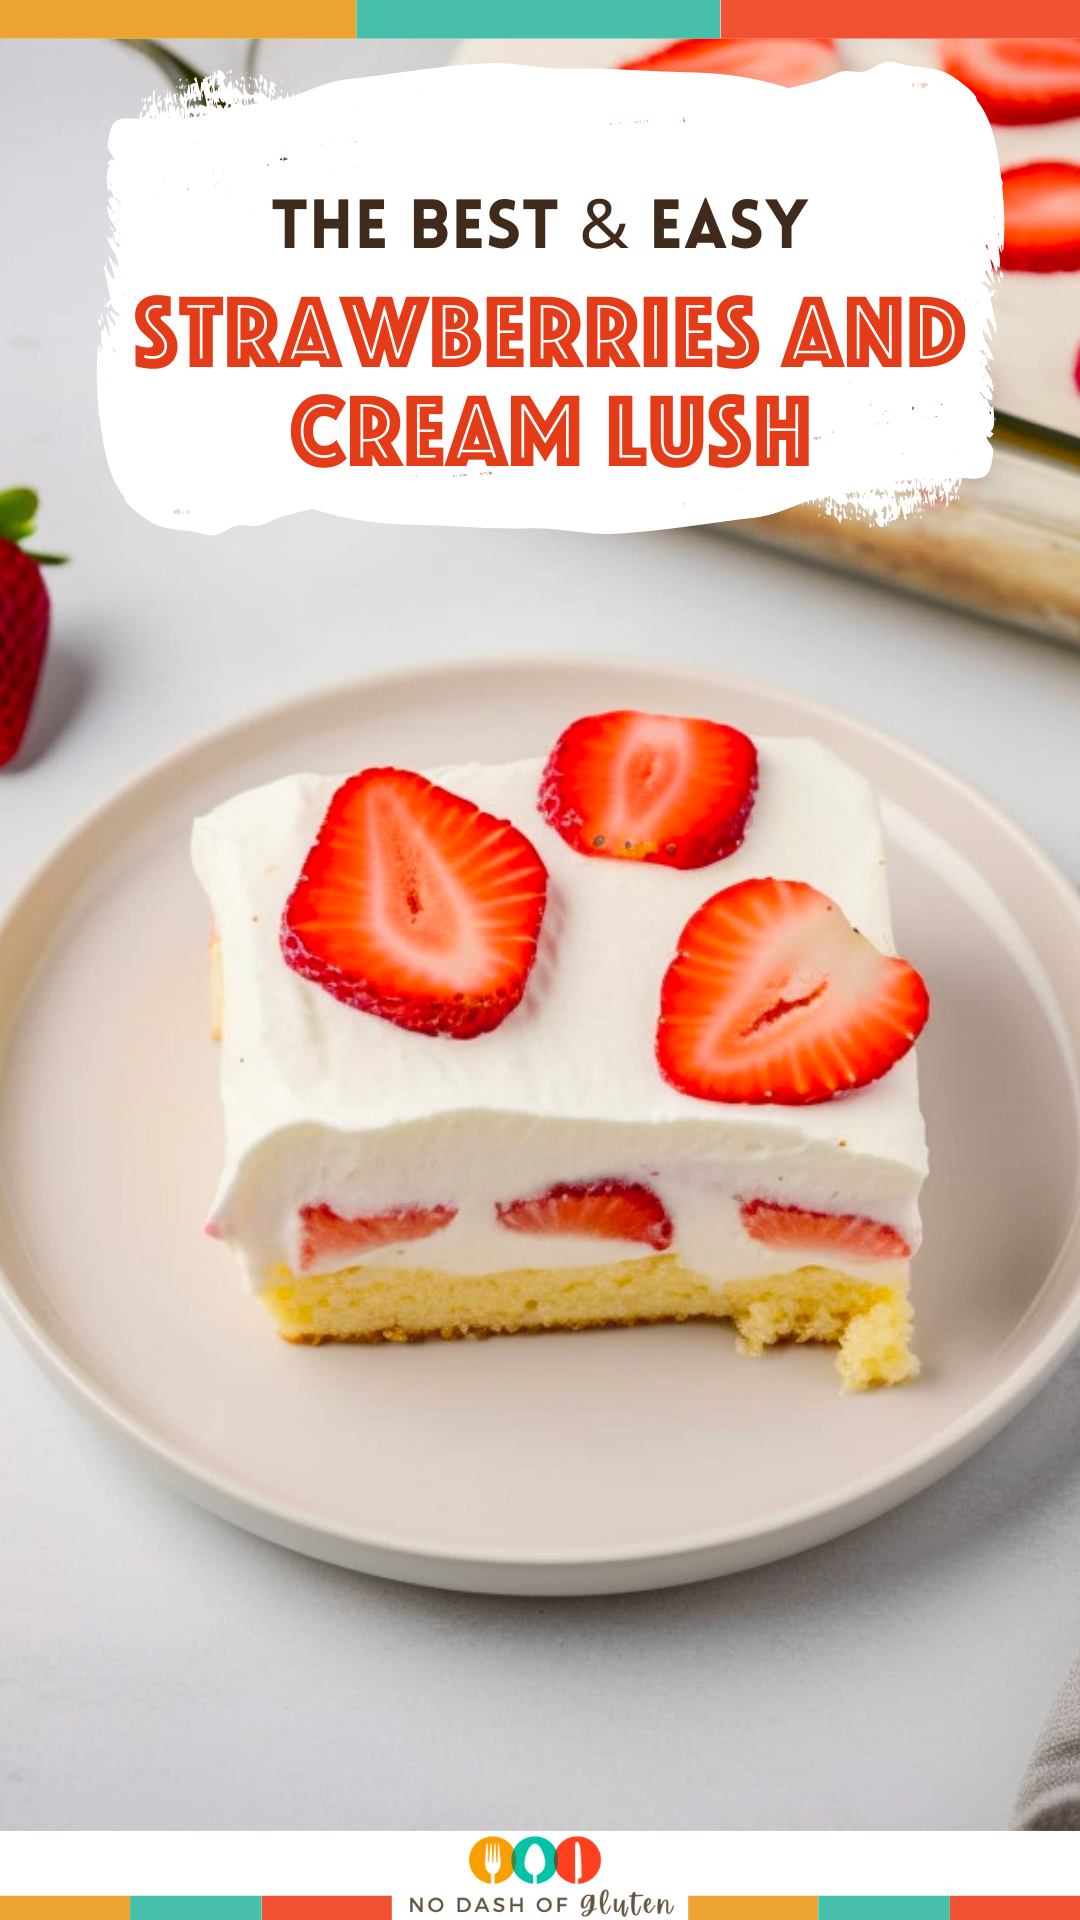 Strawberries and Cream Lush